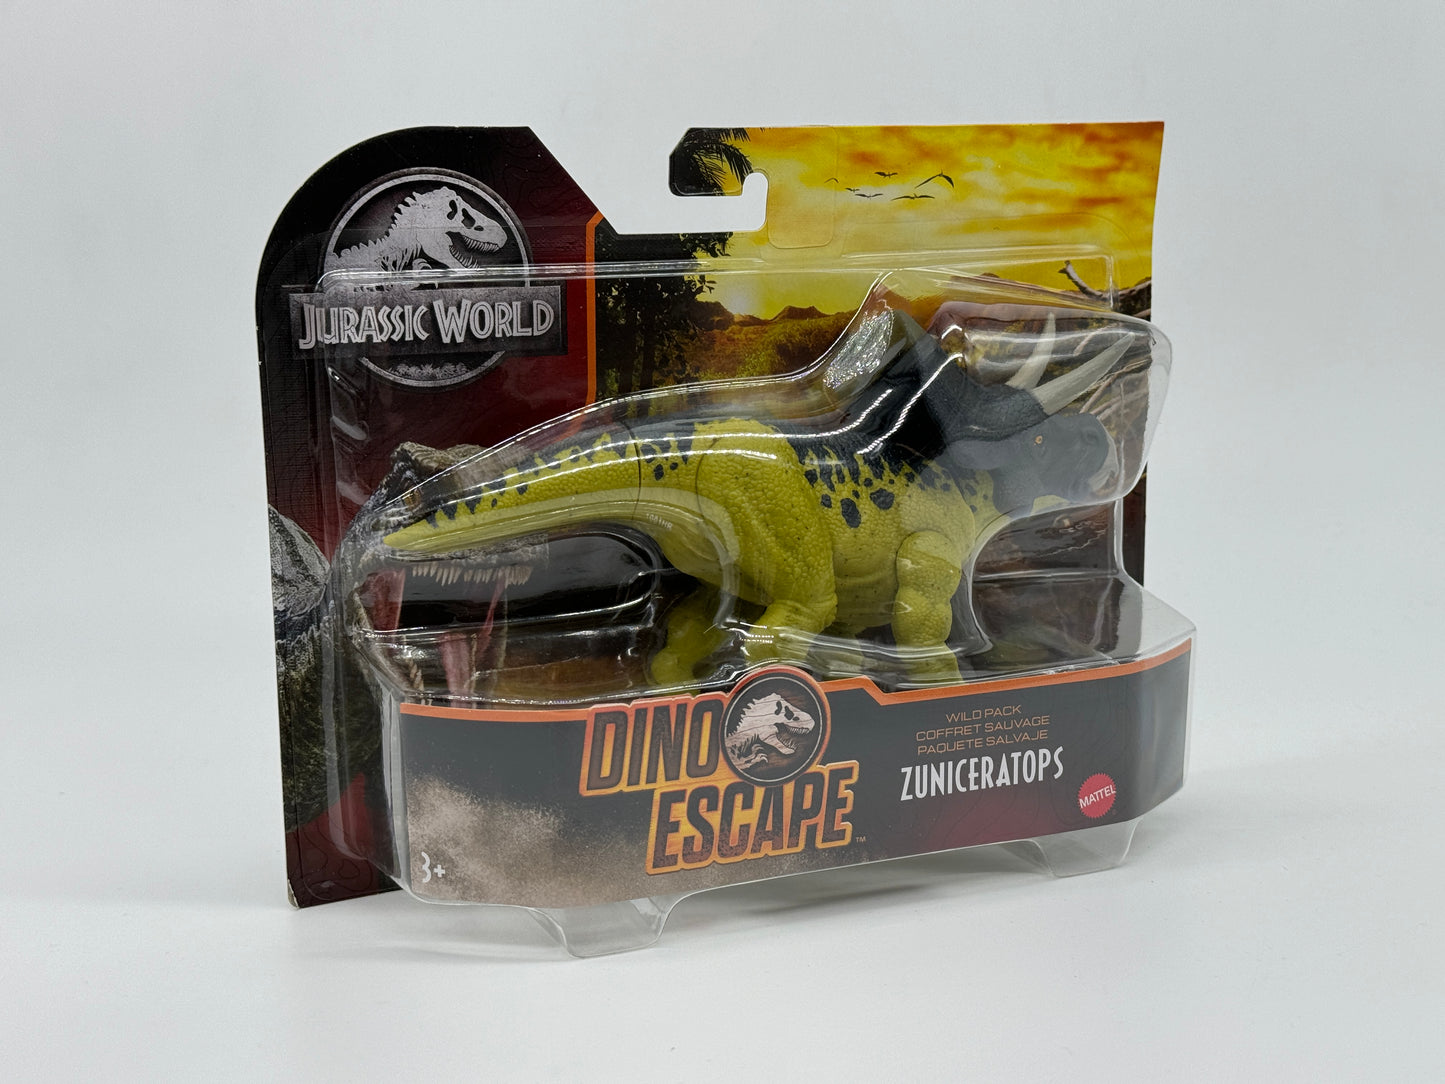 Jurassic World Dino Escape Wild Pack - ZUNICERATOPS - Wilderness Set Wave 2